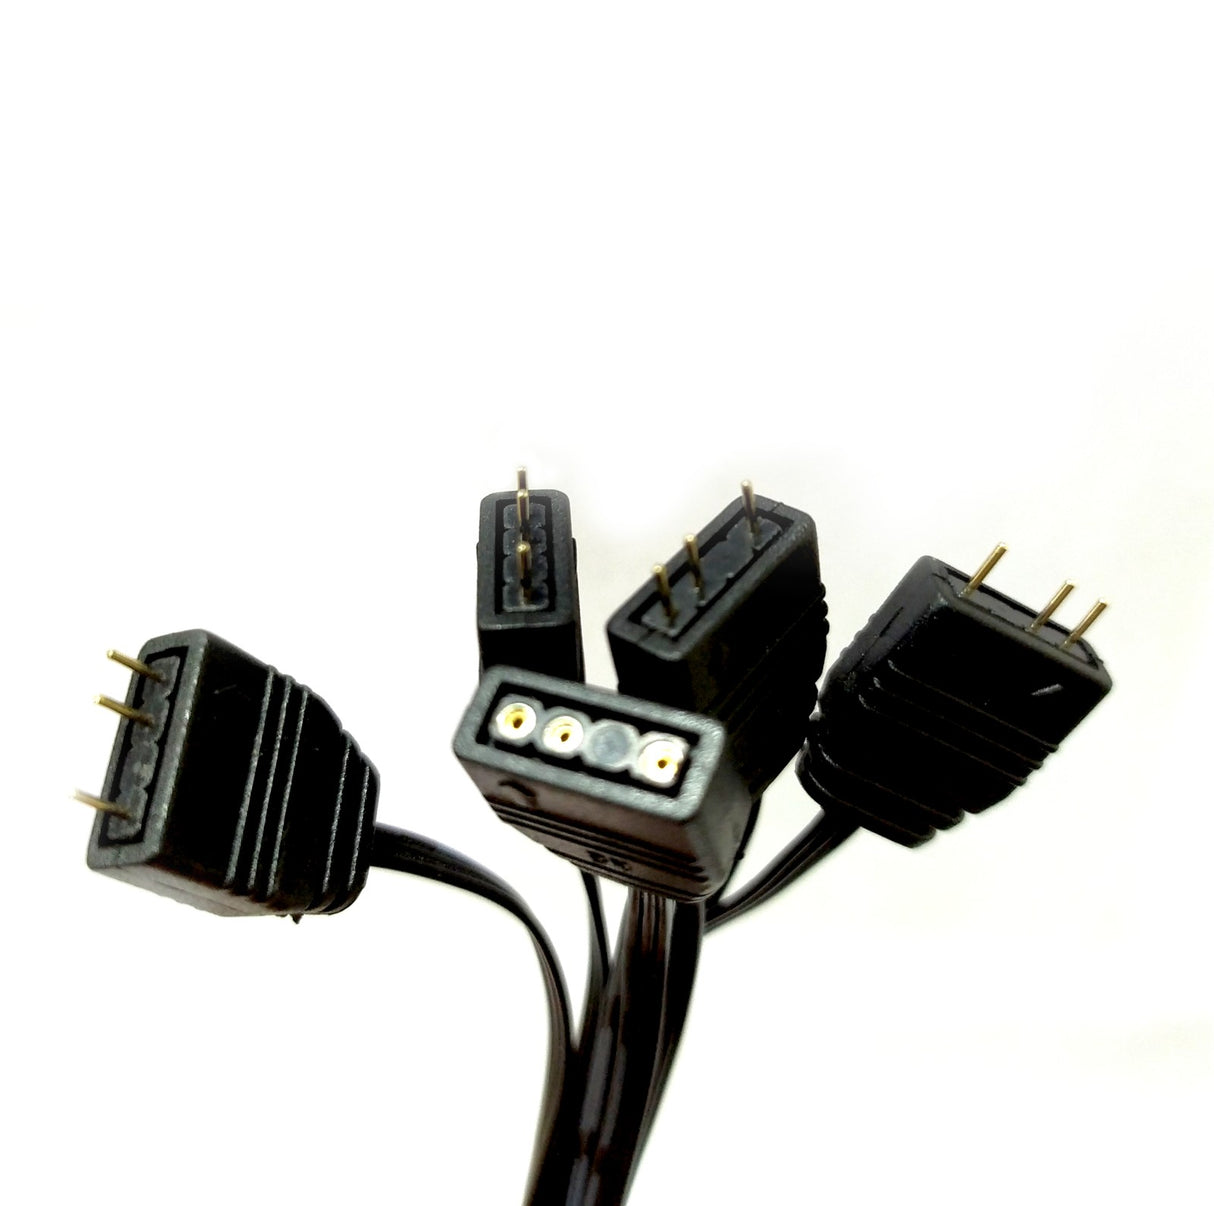 Splitter Cable 3-Pin 5V ARGB Led Sync 1 to 4 Way Split